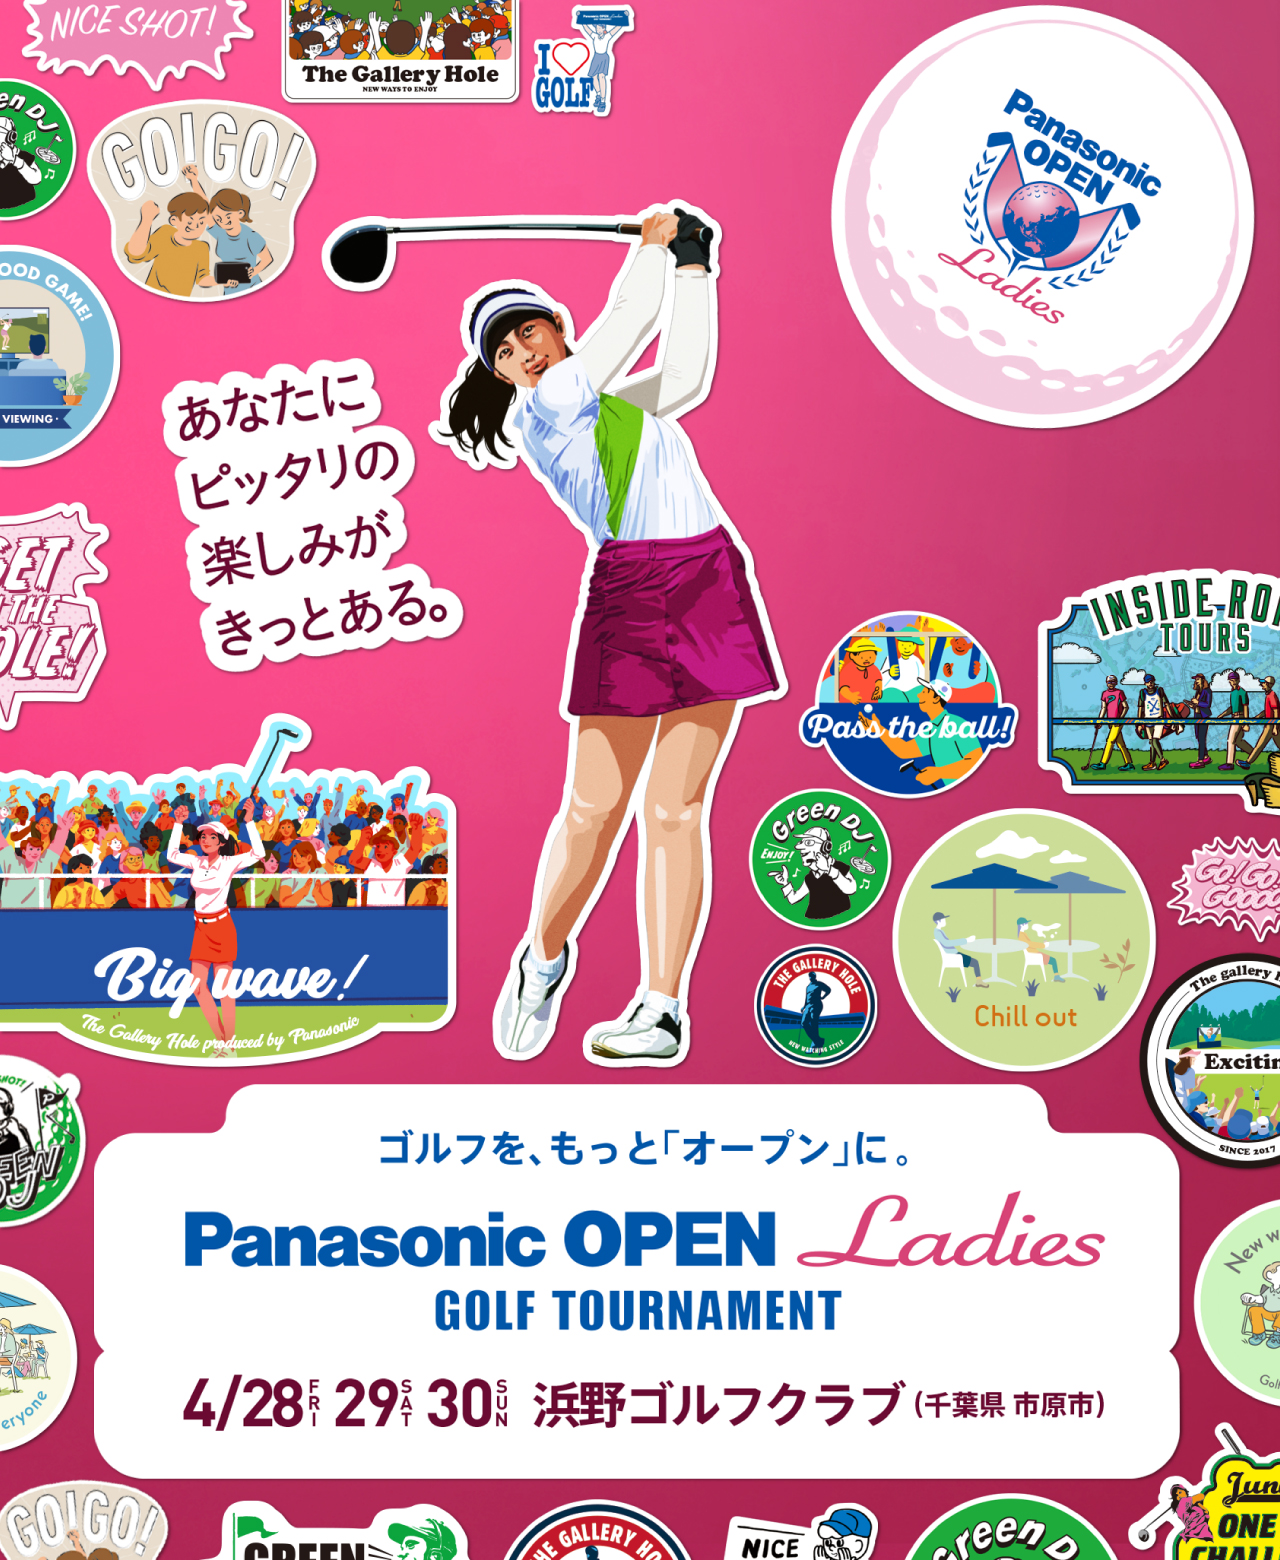 ゴルフを、もっと「オープン」に。 Panasonic OPEN Ladies GOLF TOURNAMENT 4/28（FRI）、29（SAT）、30（SUN） 浜野ゴルフクラブ（千葉県 市原市） あなたにピッタリの楽しみがきっとある。